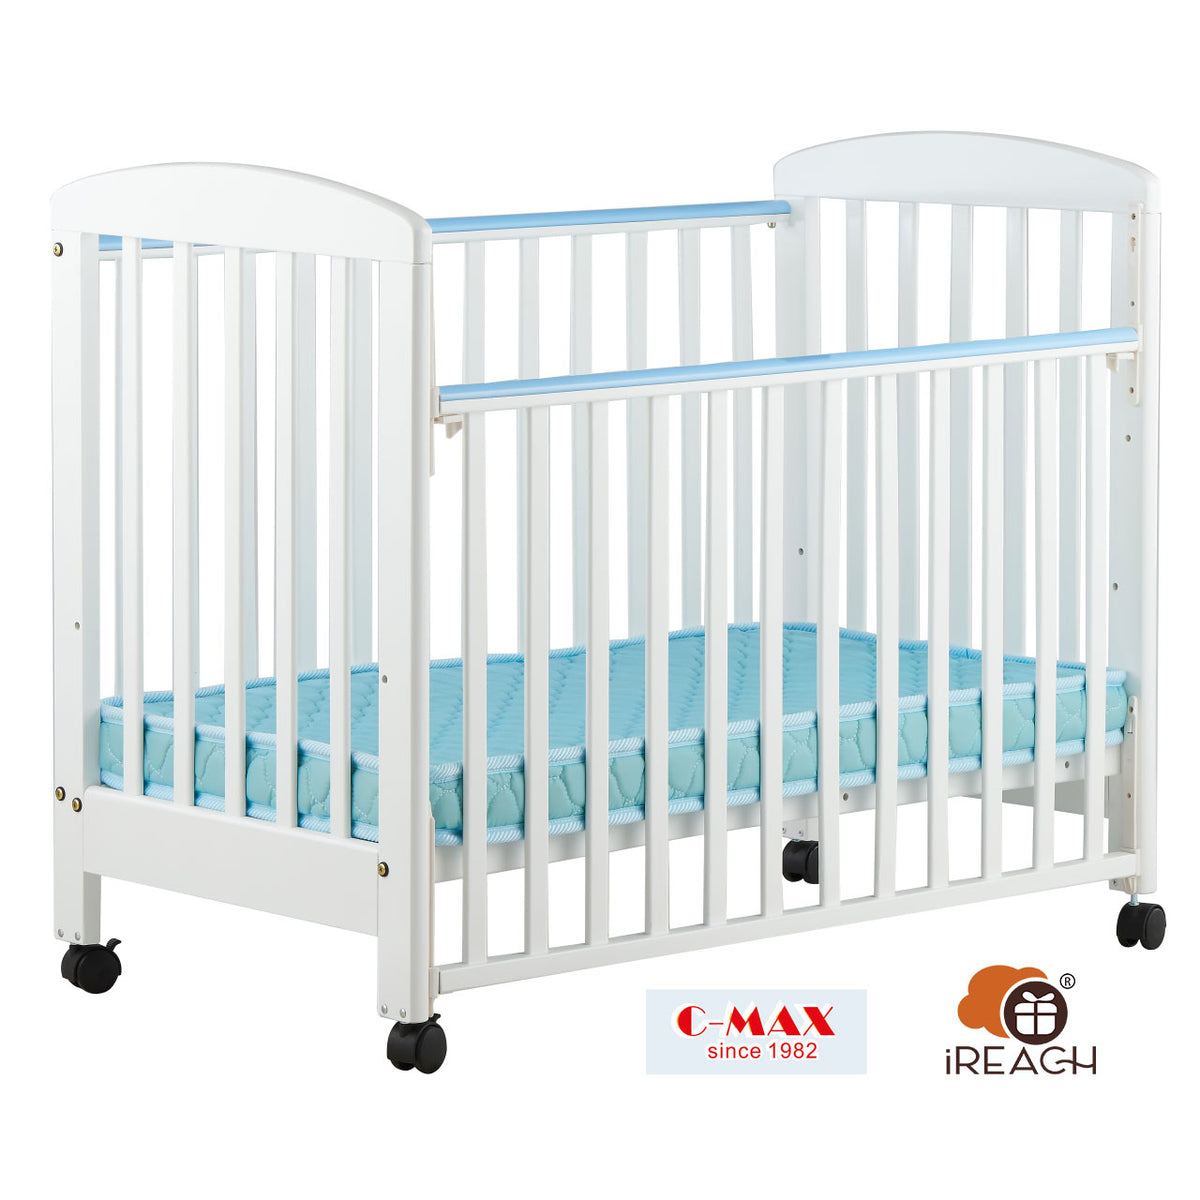 C-MAX 嬰兒床 L102 x W61 x H92cm No.201M